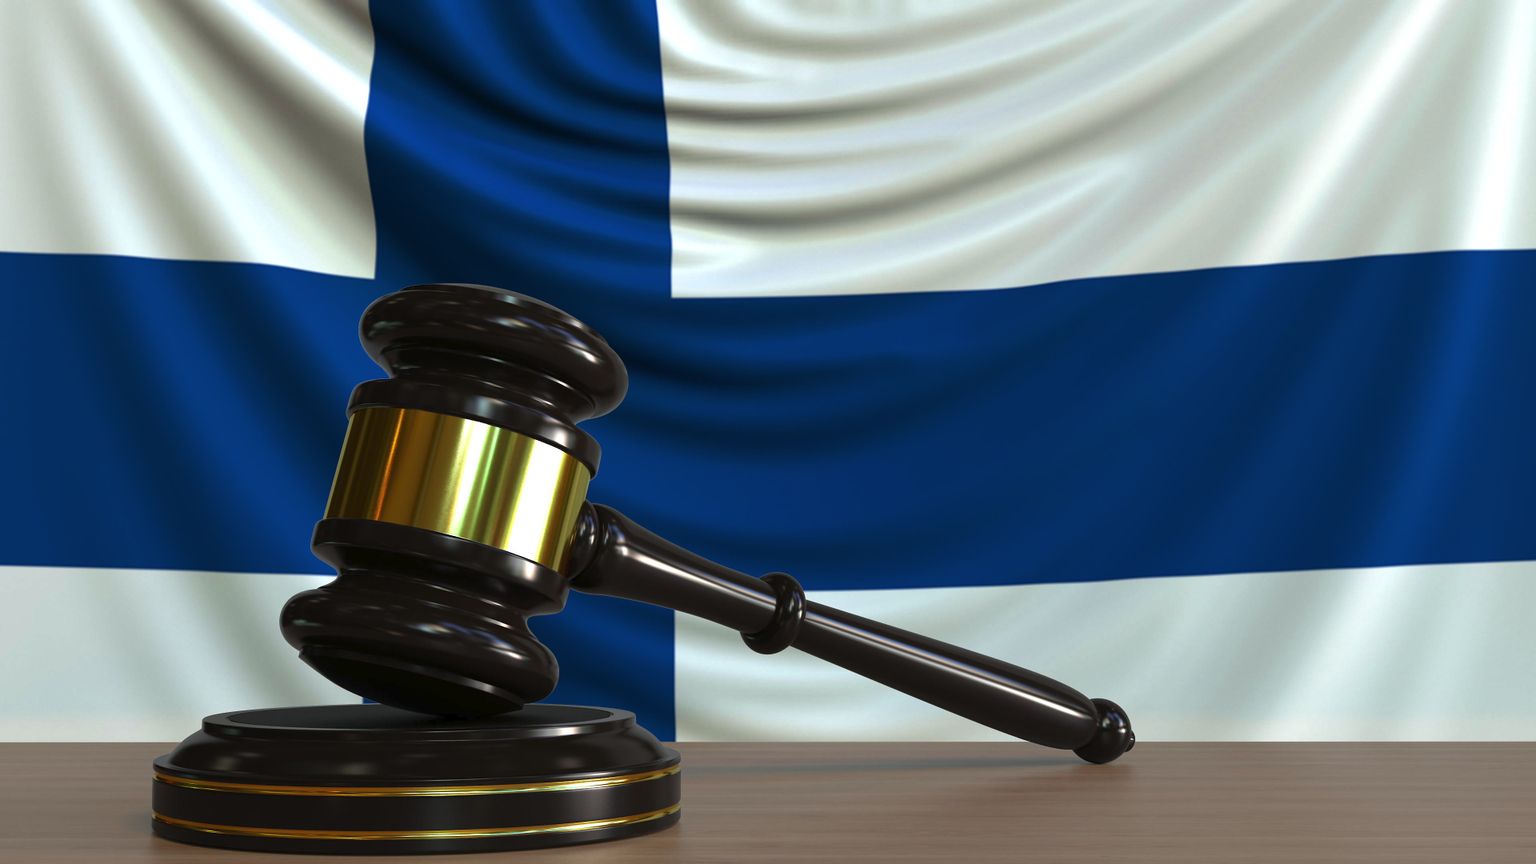 Soome lipp ja kohtuhaamer. Pilt on illustreeriv